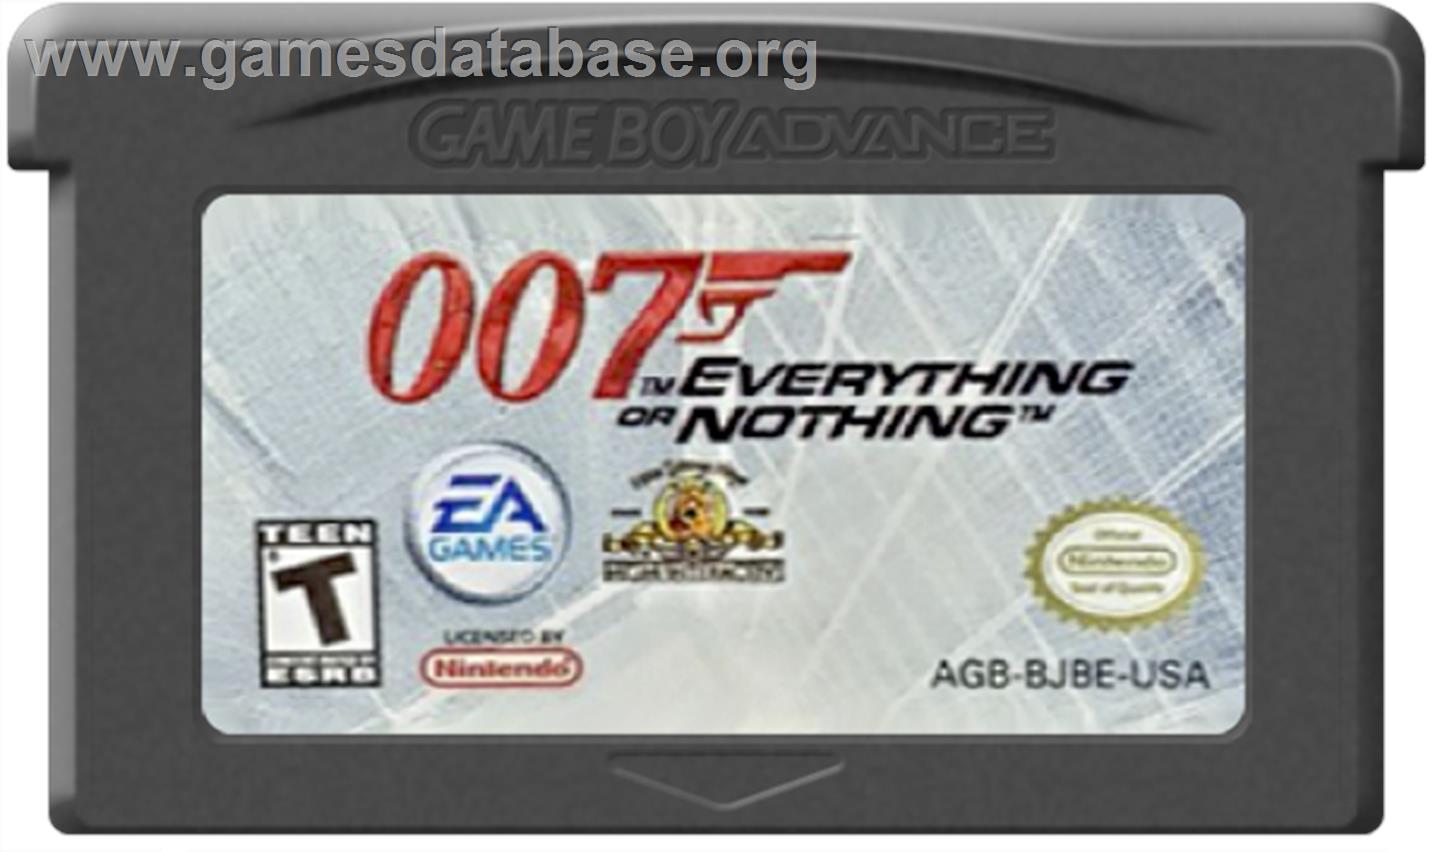 007: Everything or Nothing - Nintendo Game Boy Advance - Artwork - Cartridge